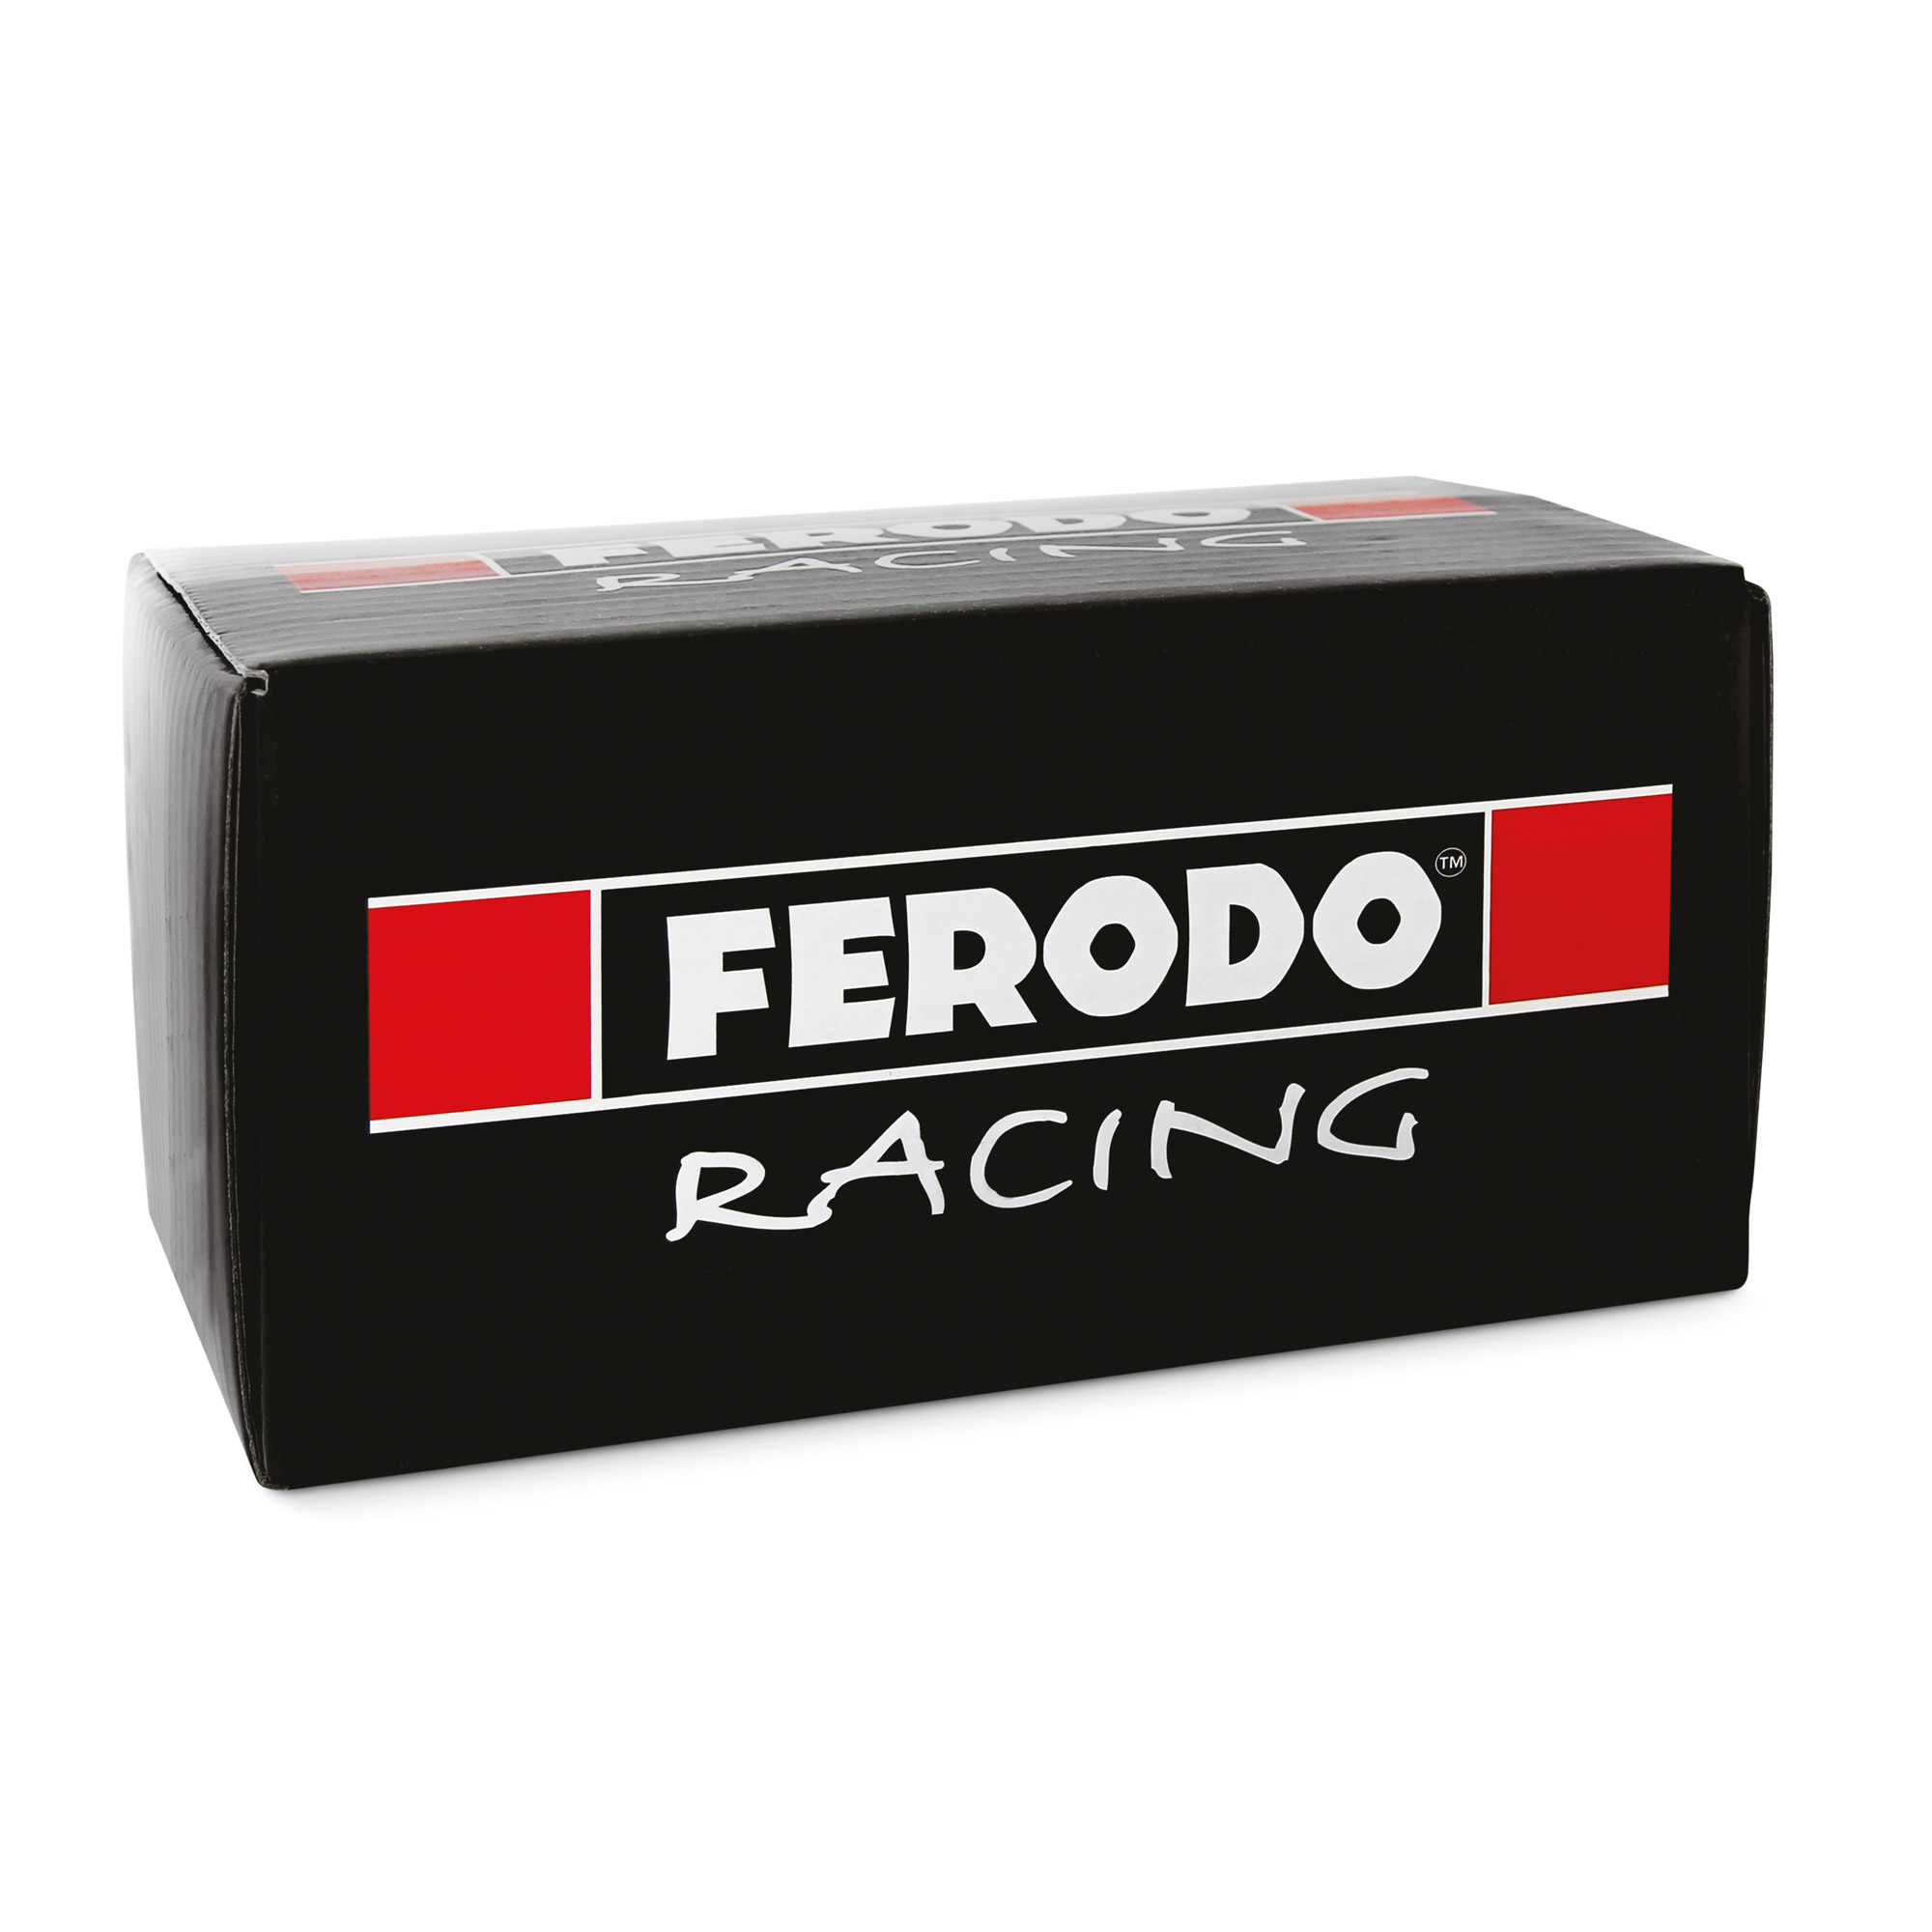 Ferodo DS2500 plaquettes de frein arrière pour Impreza STI Hatch 08